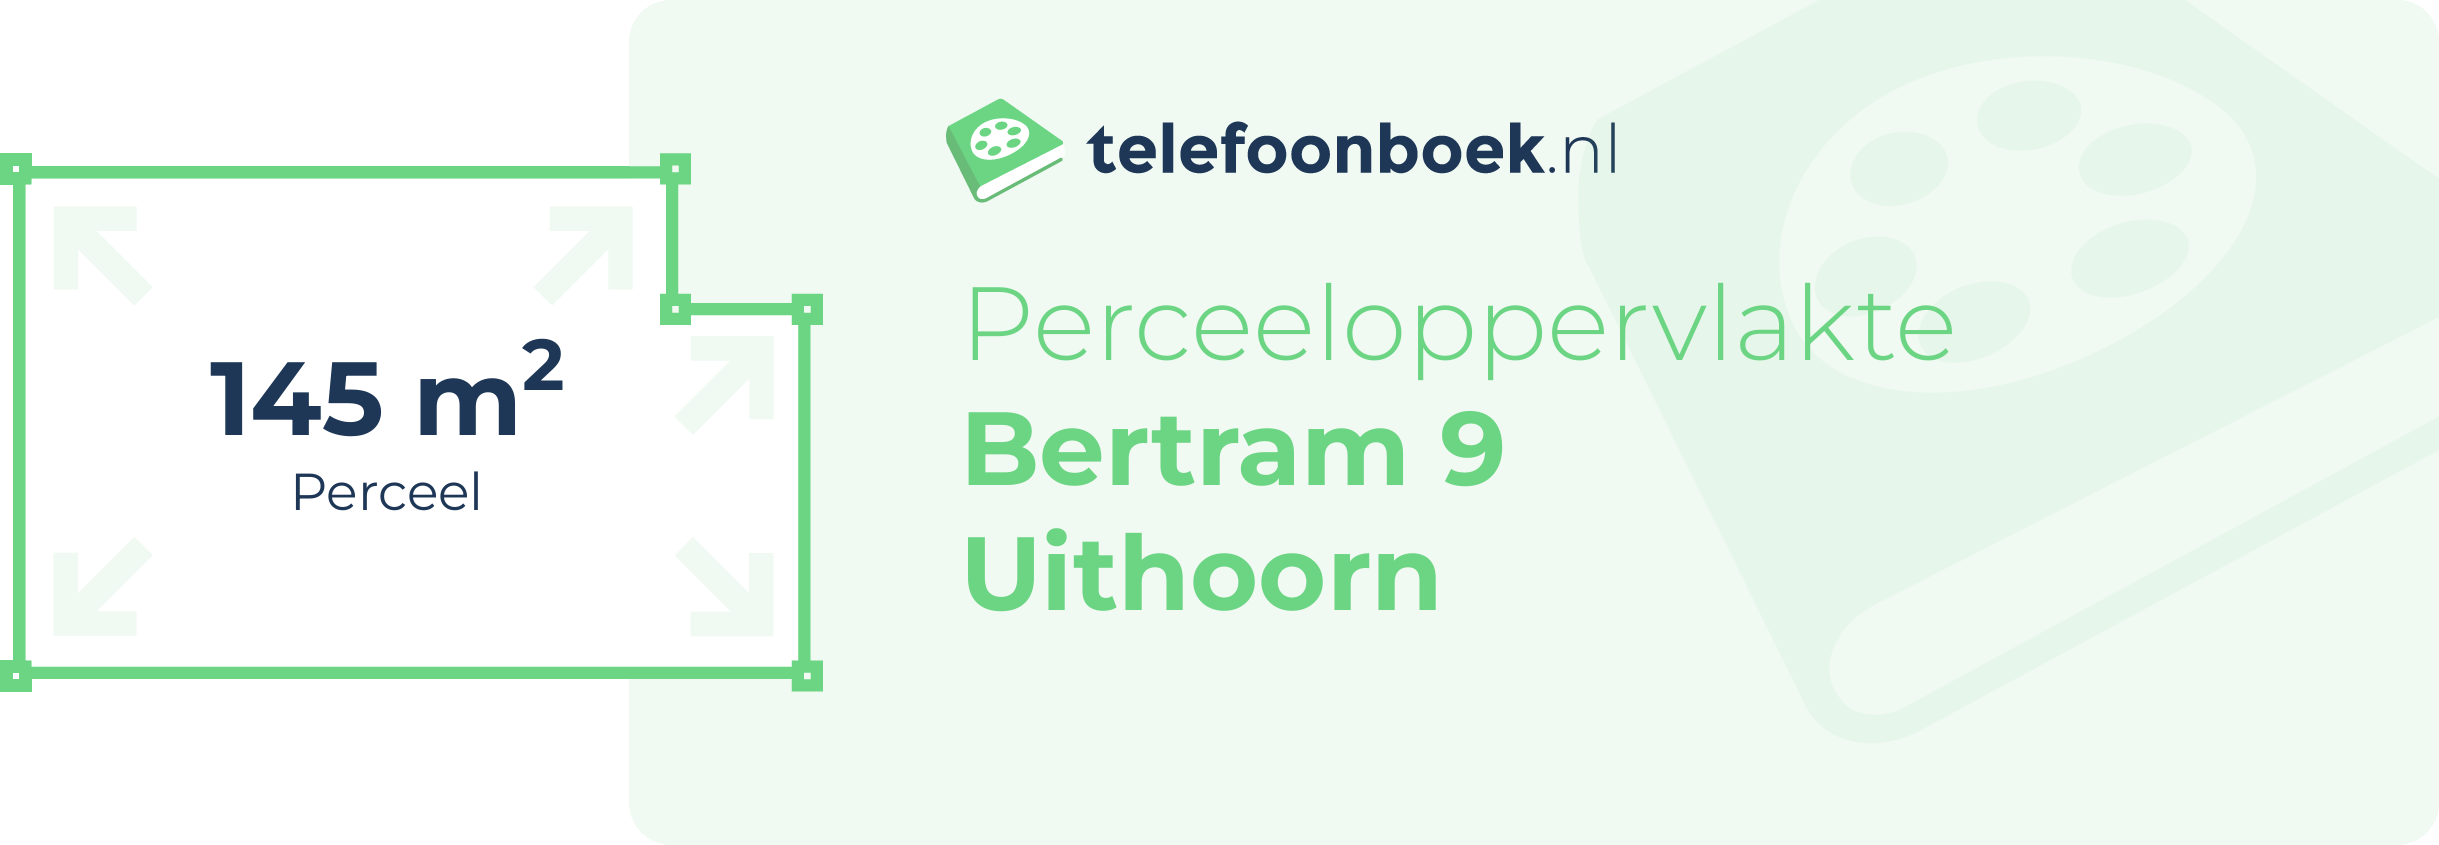 Perceeloppervlakte Bertram 9 Uithoorn